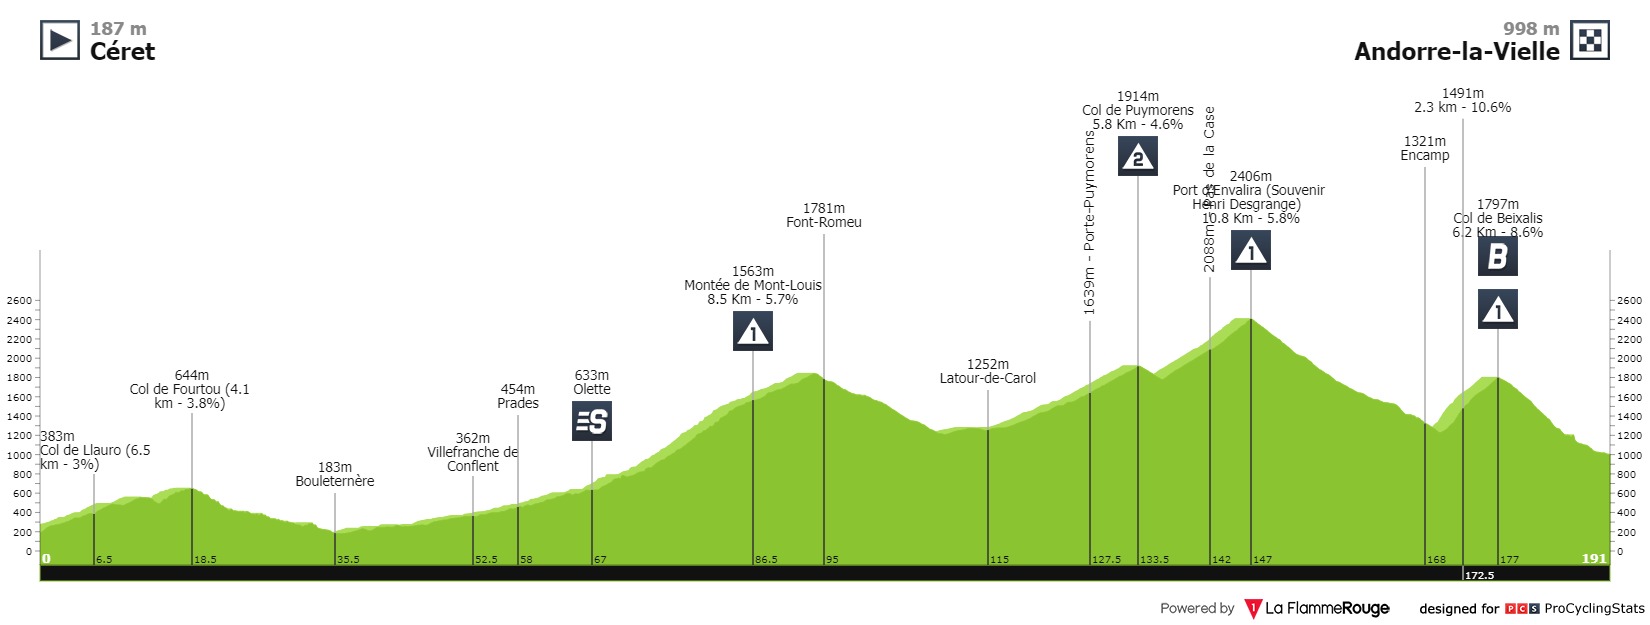 tour-de-france-2021-stage-15-profile-22005b0539.jpg